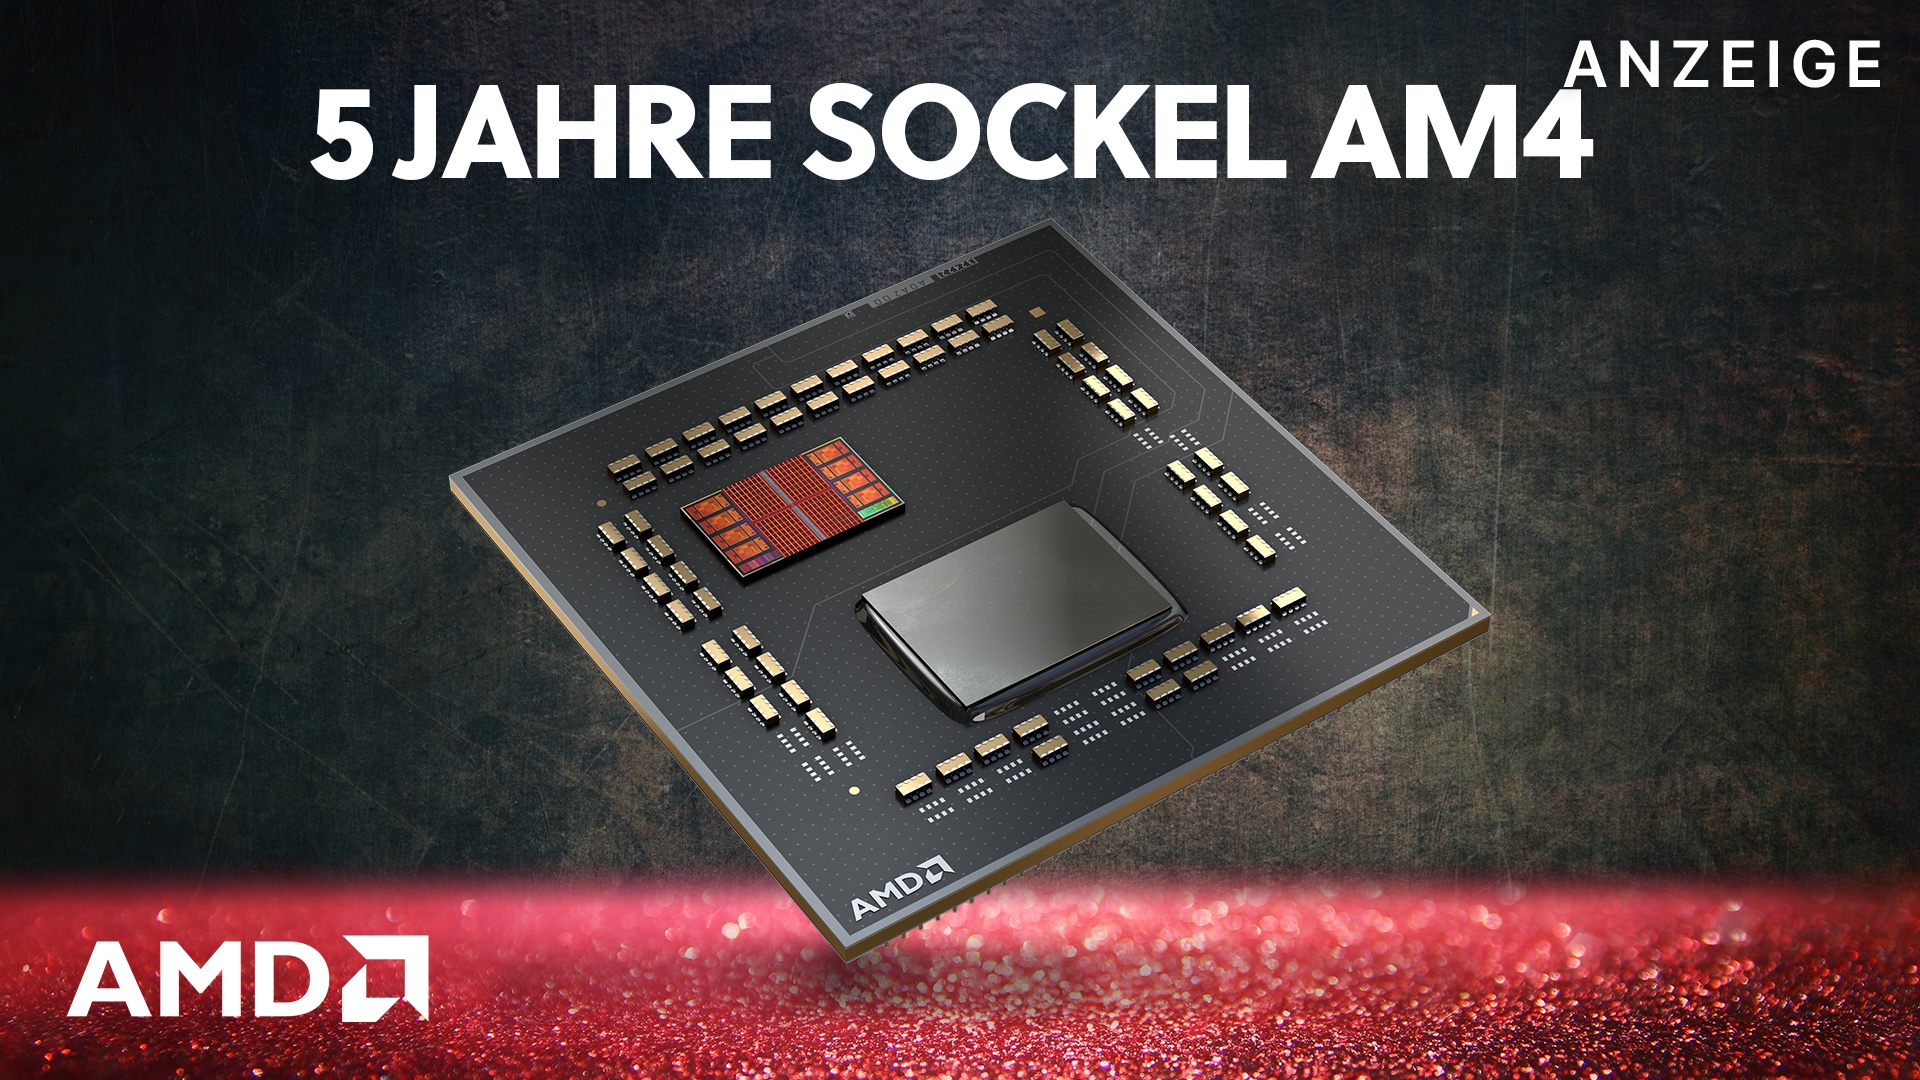 #5 Jahre Sockel AM4 – AMDs beeindruckende Plattform lebt immer noch [Anzeige]